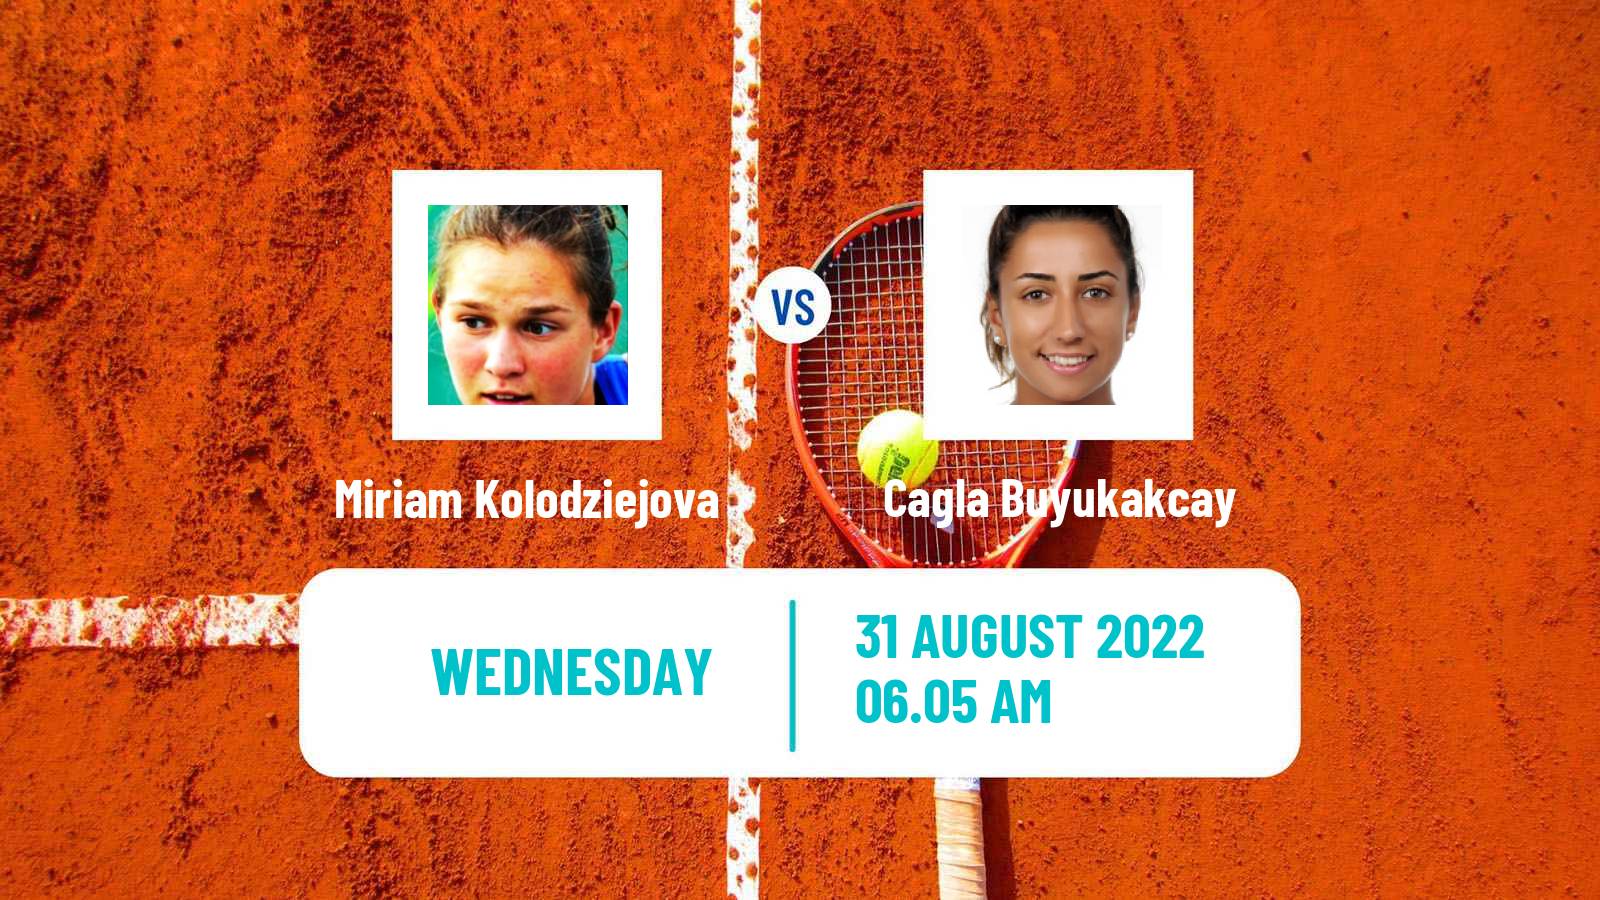 Tennis ITF Tournaments Miriam Kolodziejova - Cagla Buyukakcay